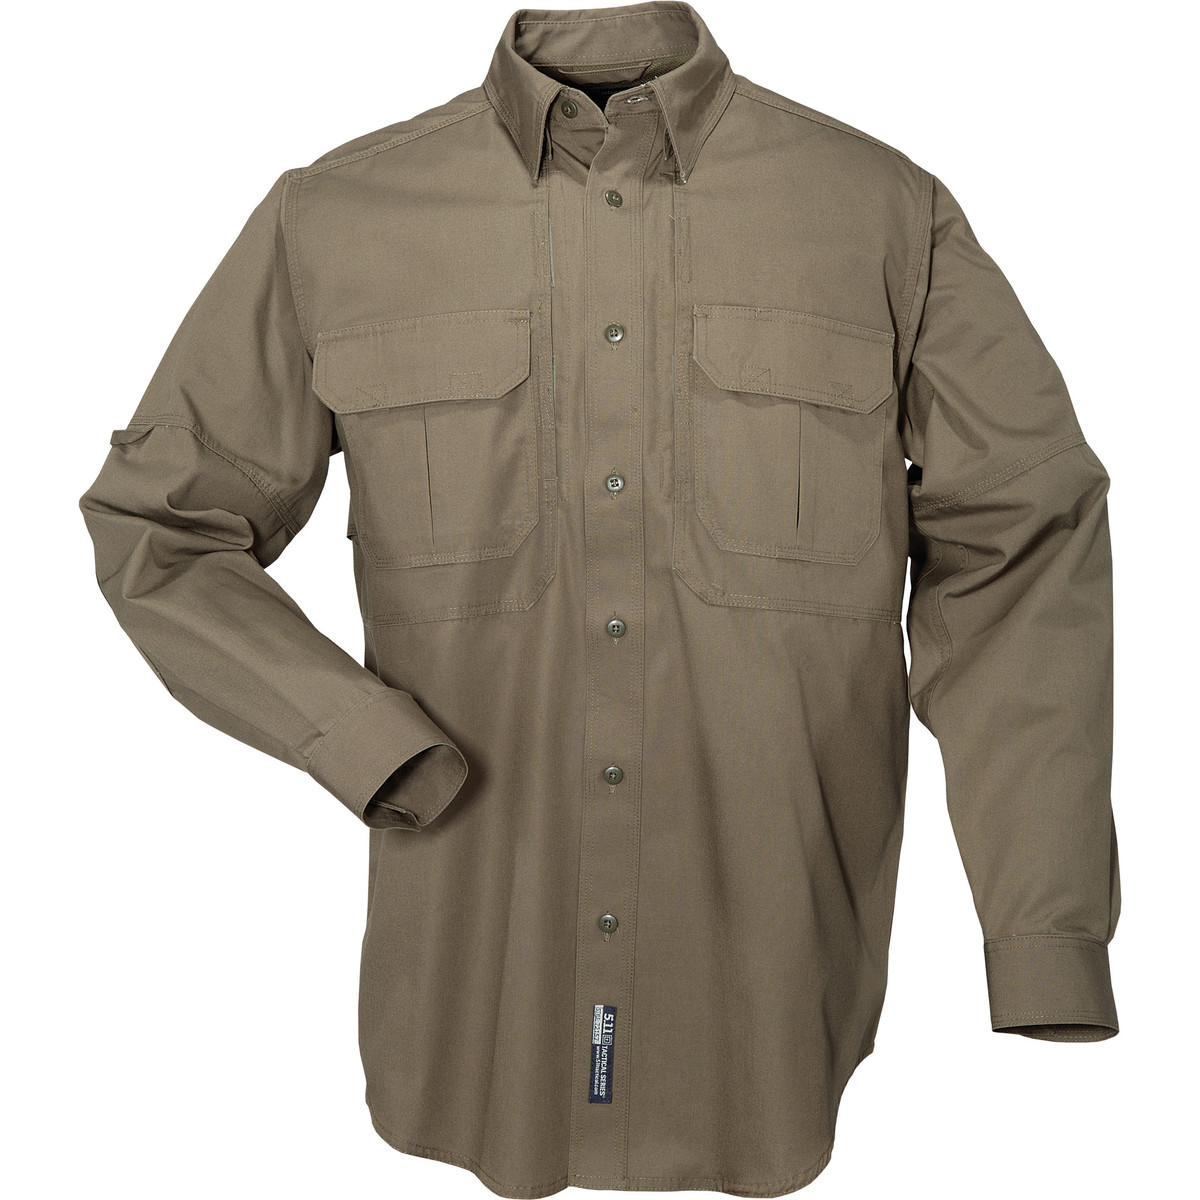 Outdoor Tactical | 5.11 Tactical Long Sleeve Shirt